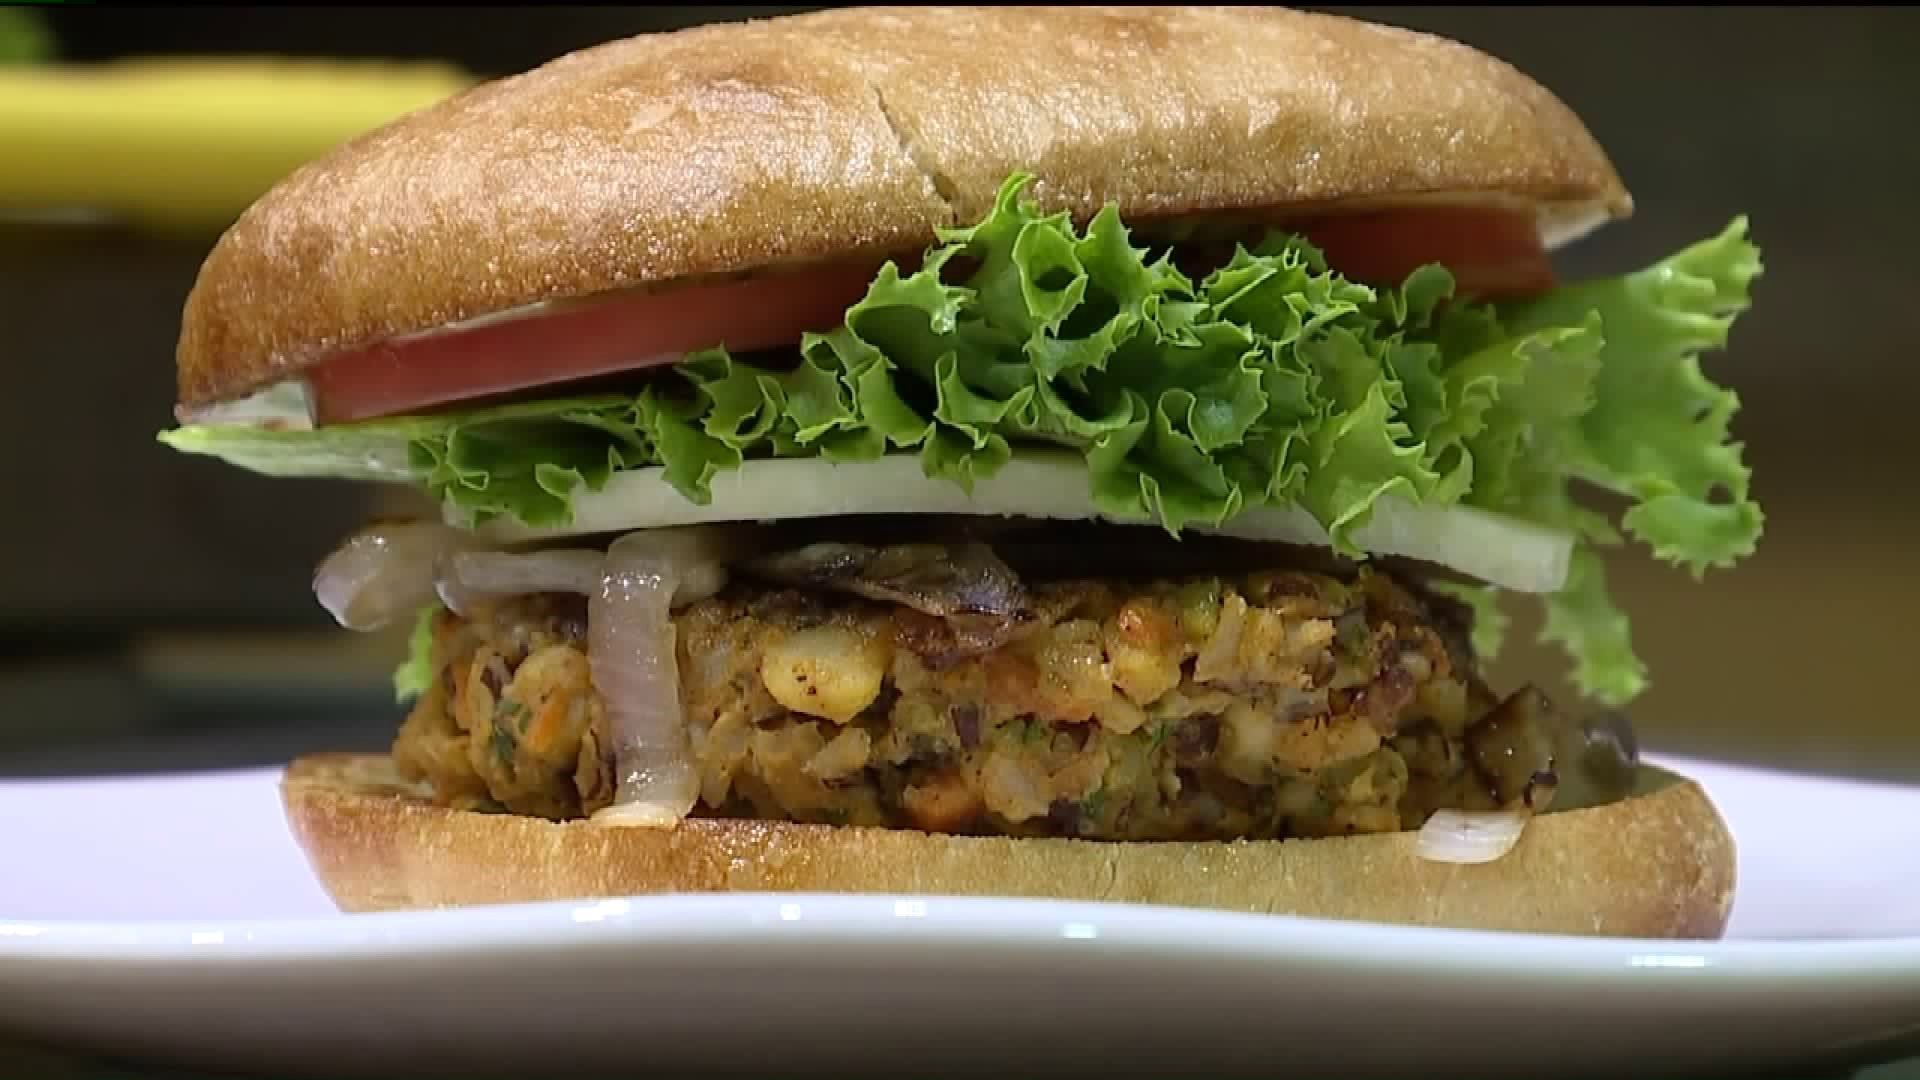 Geisinger Adds Vegan Burger to Hospital Menu